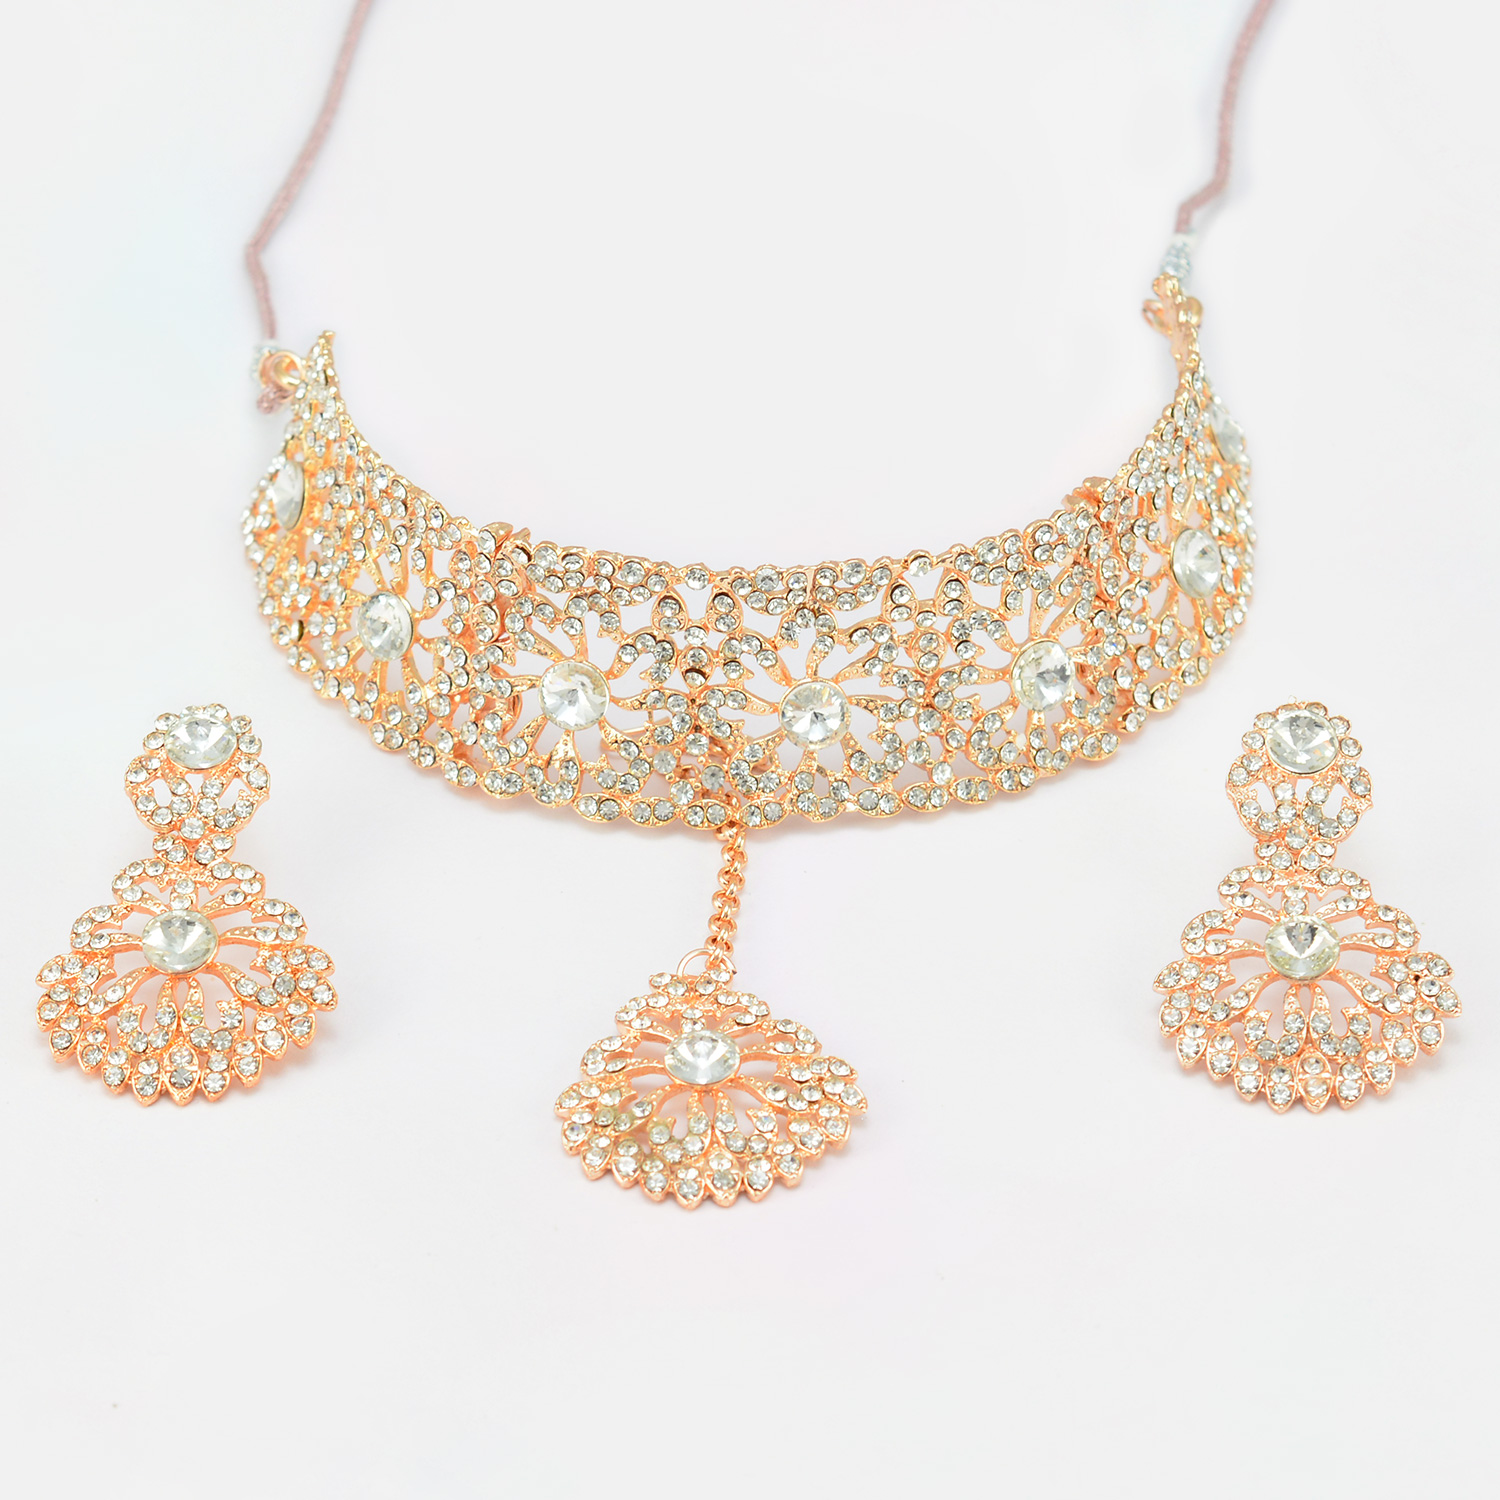 Amazing Diamond Studded Necklace Set